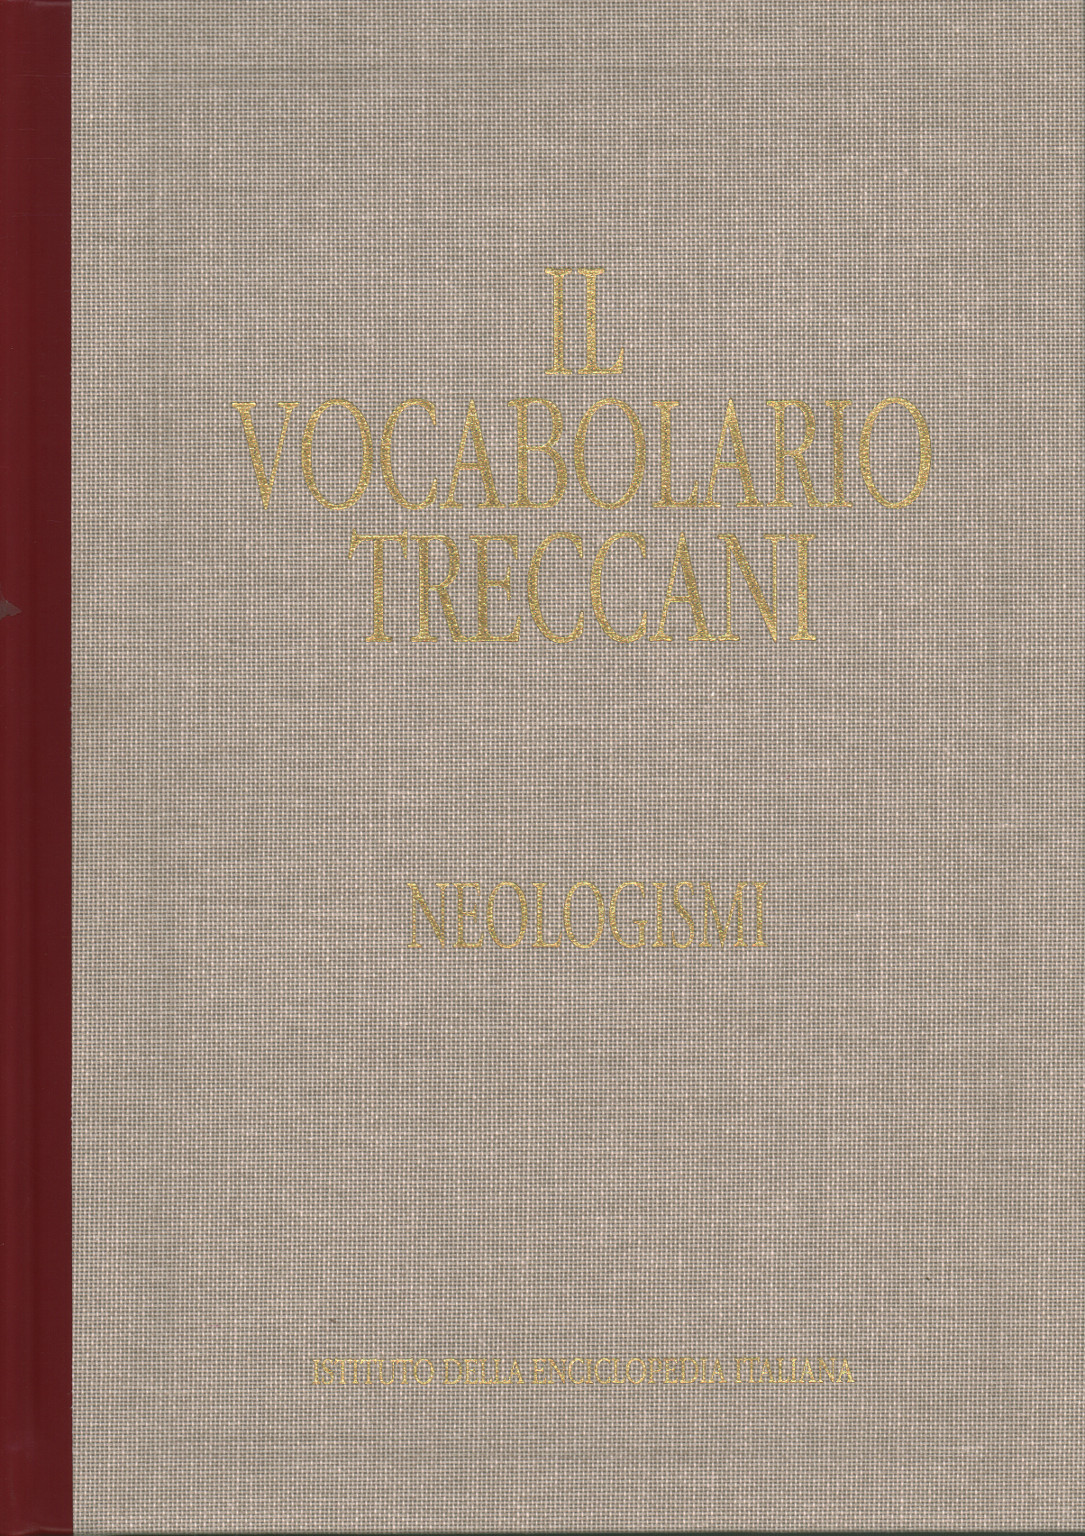 El vocabulario Treccani. Neologismos. Nuevas palabras, AA.VV.